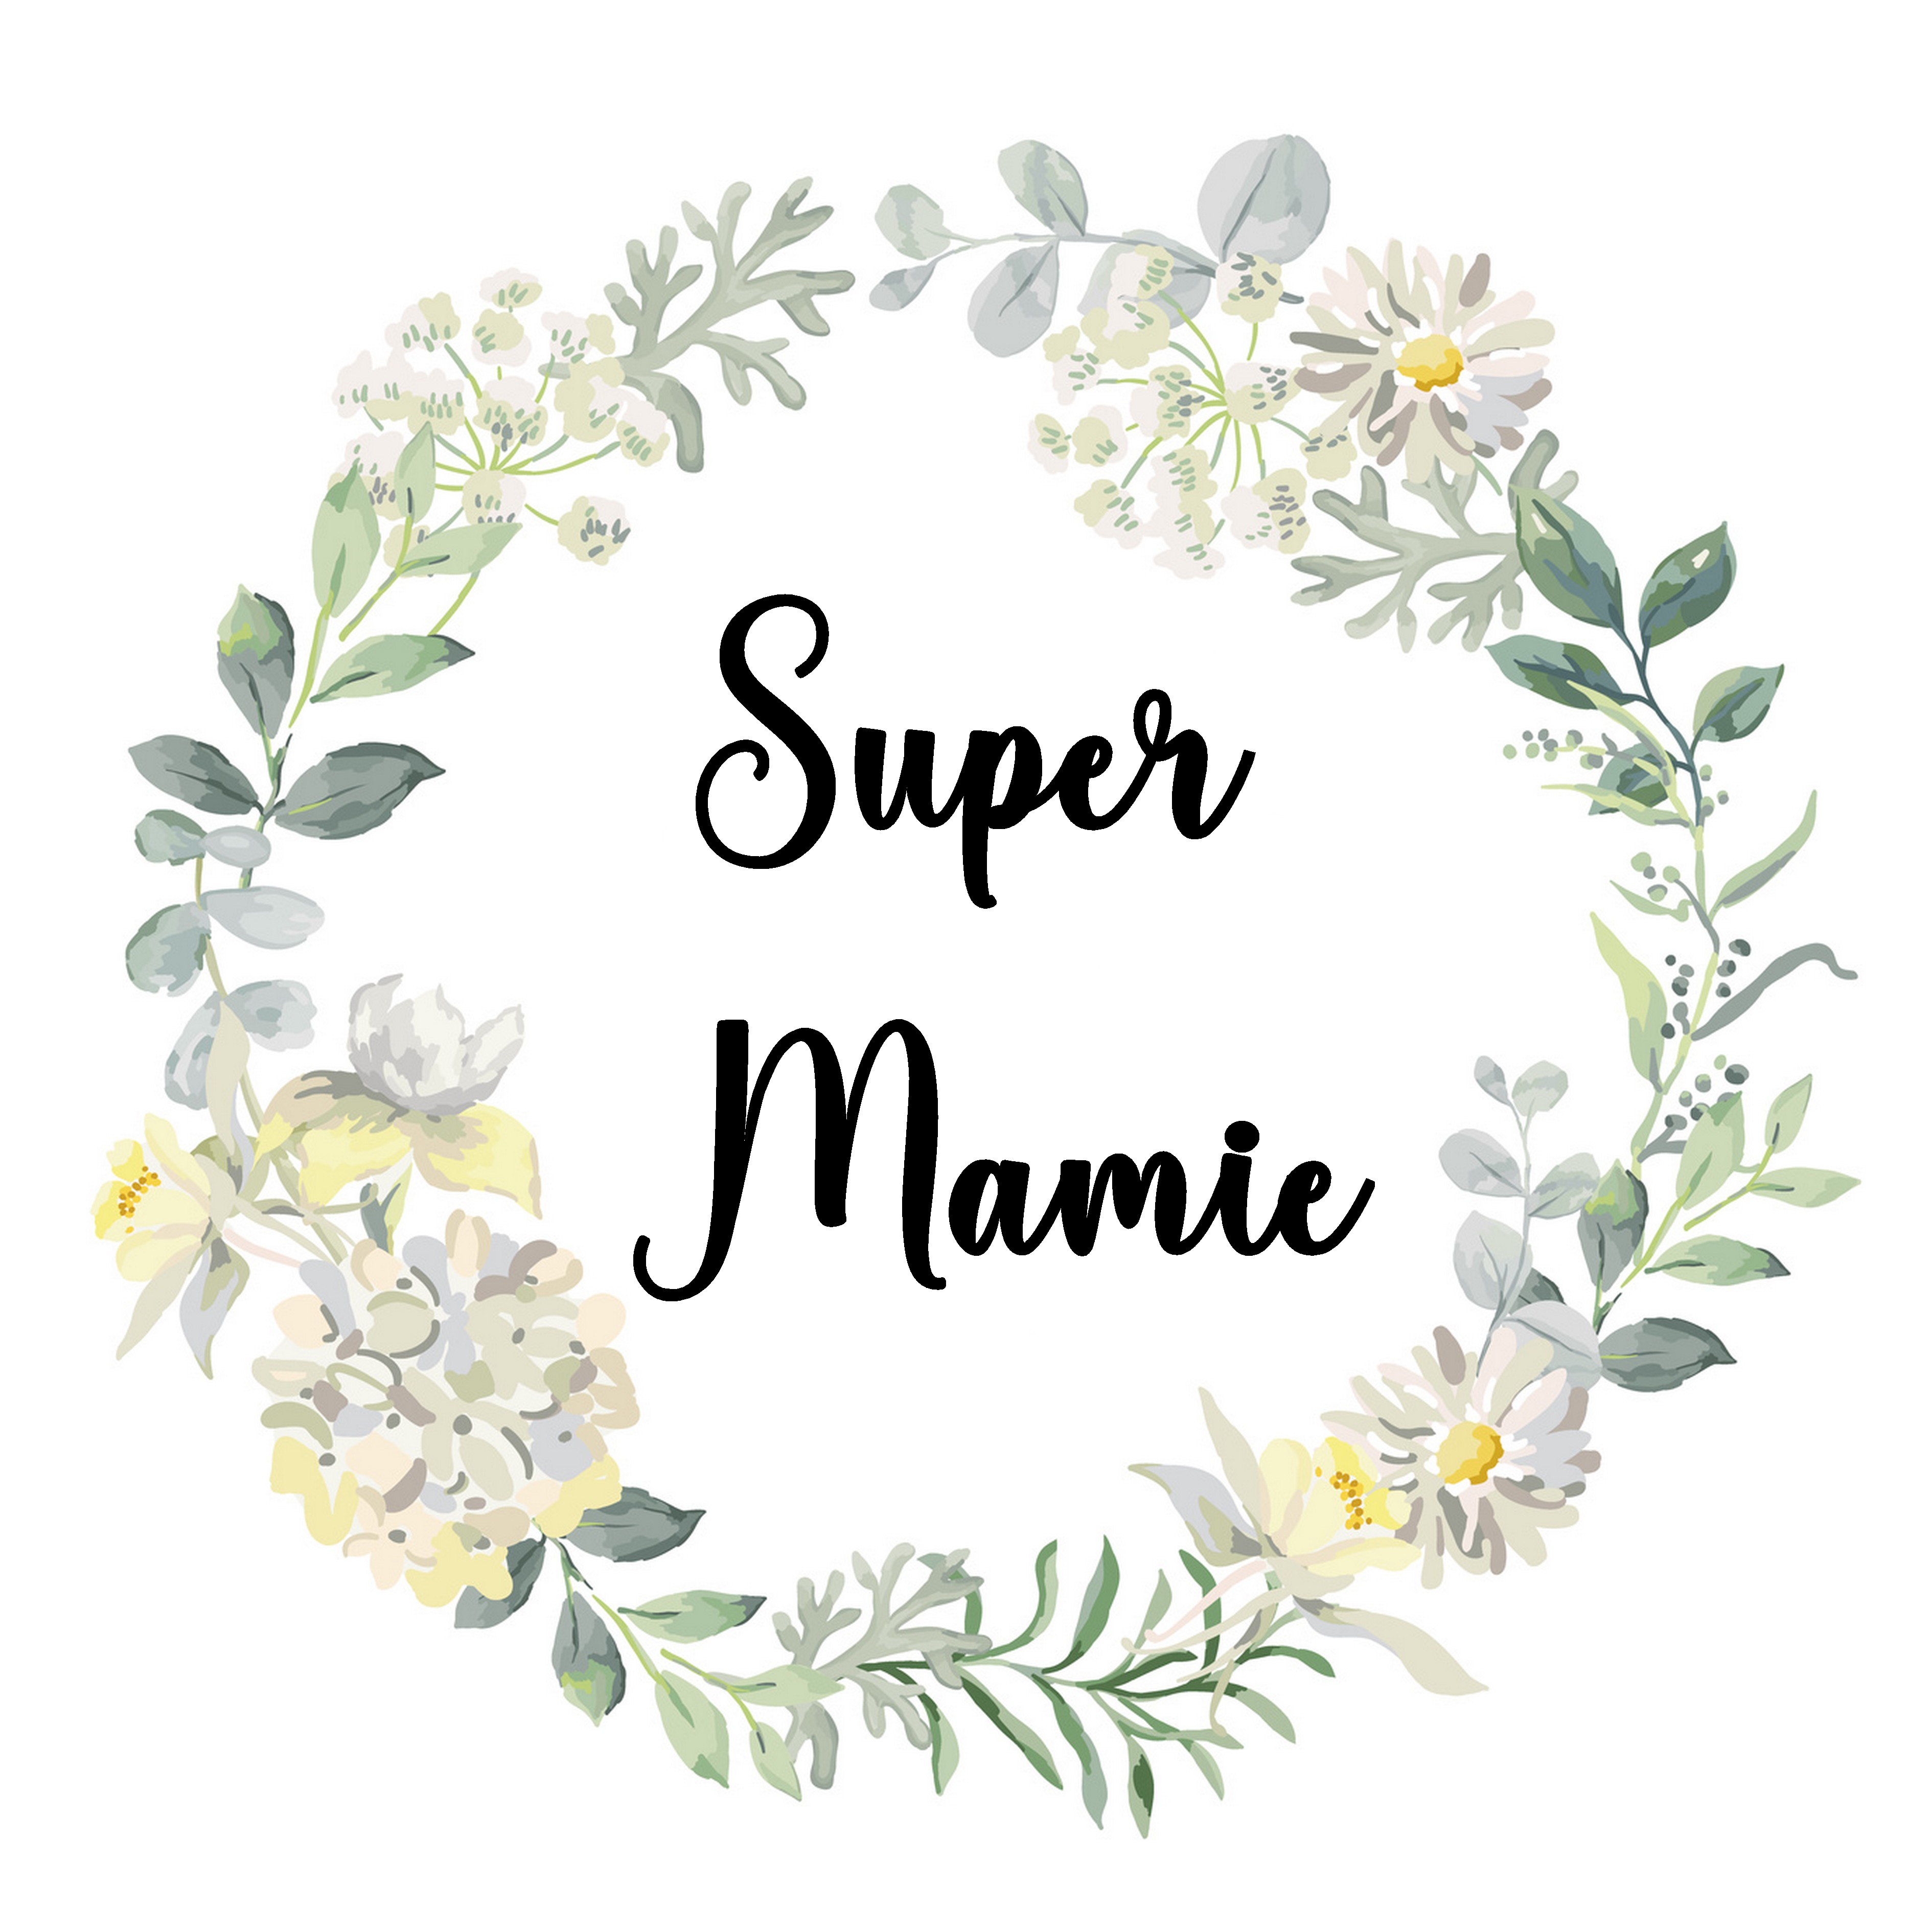 Pochette Super Mamie